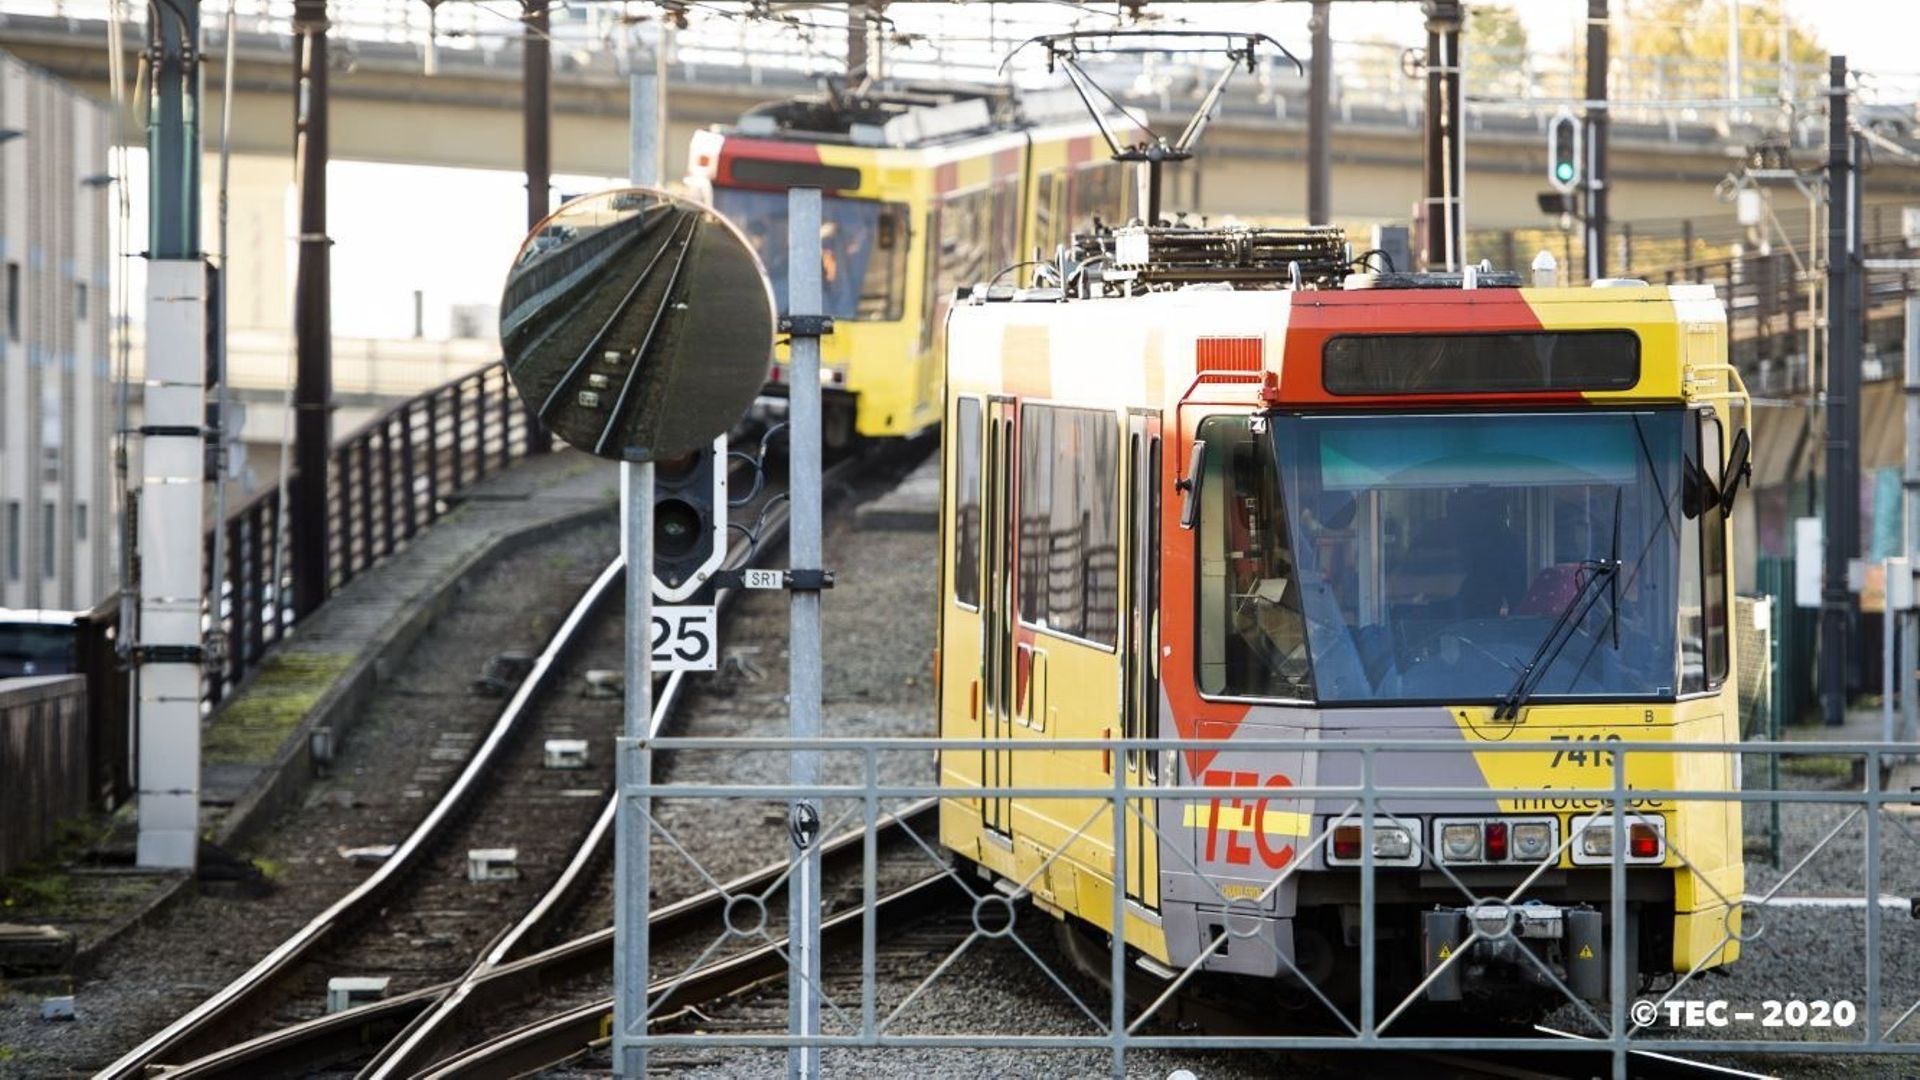 La signalisation du métro carolo sera, en partie, rénovée par la société Alstom basée à Charleroi